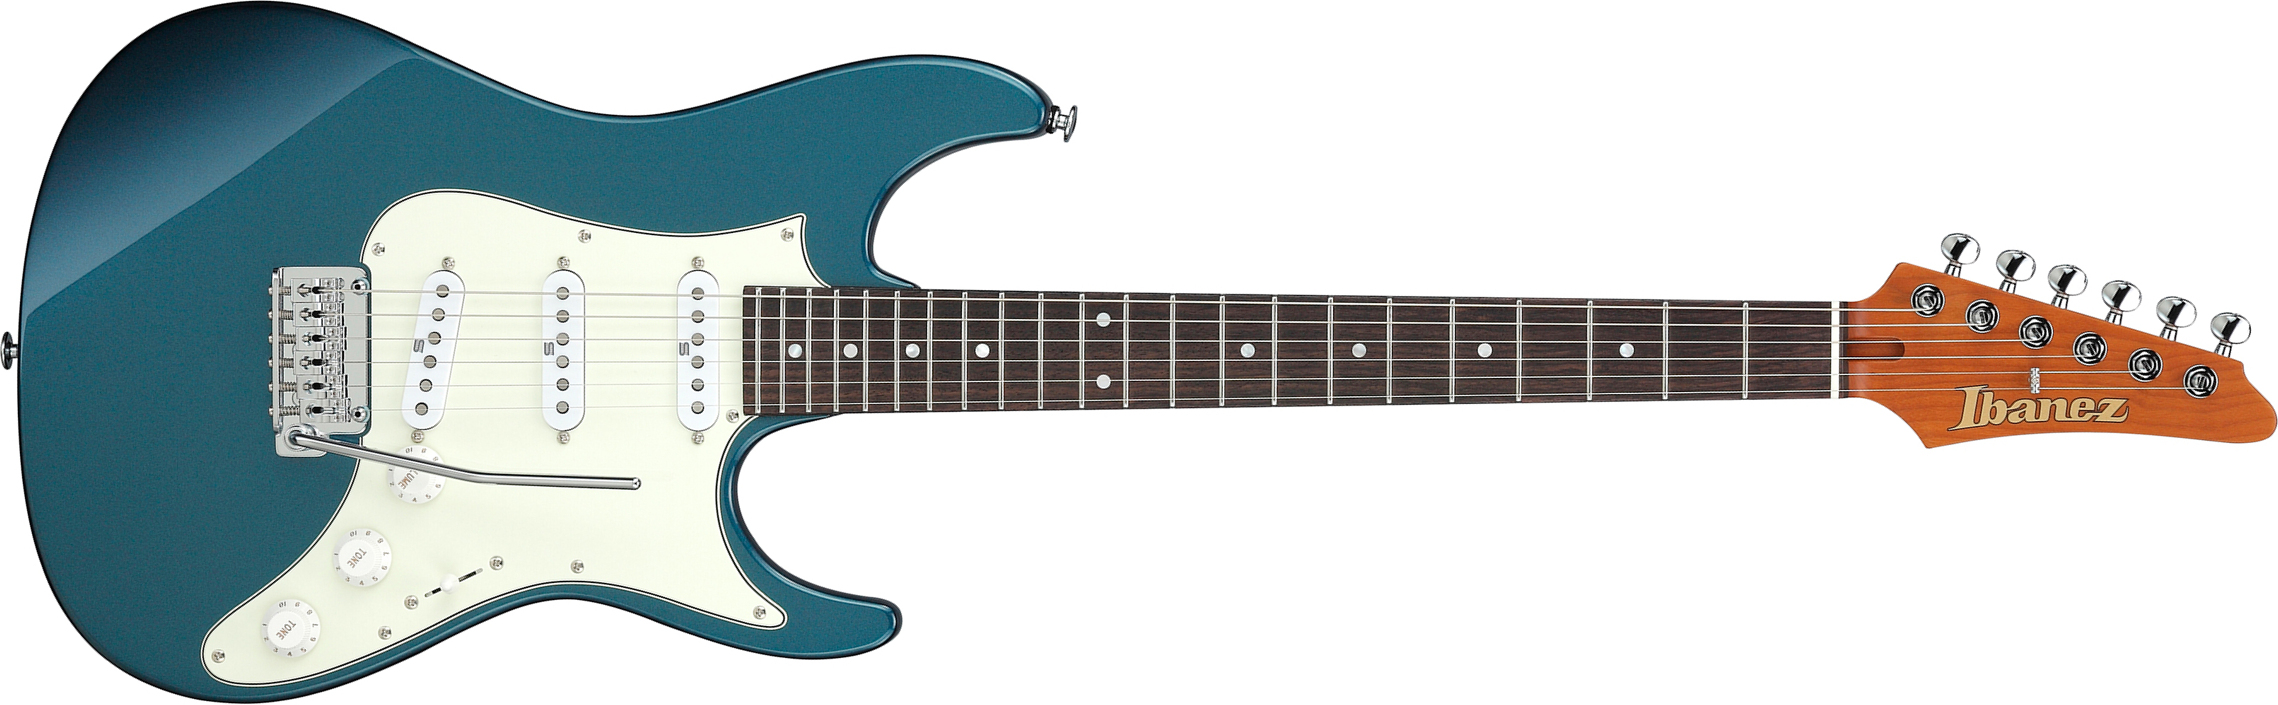 Ibanez Az2203n Atq Prestige Jap 3s Seymour Duncan Trem Rw - Antique Turquoise - Guitarra eléctrica con forma de str. - Main picture